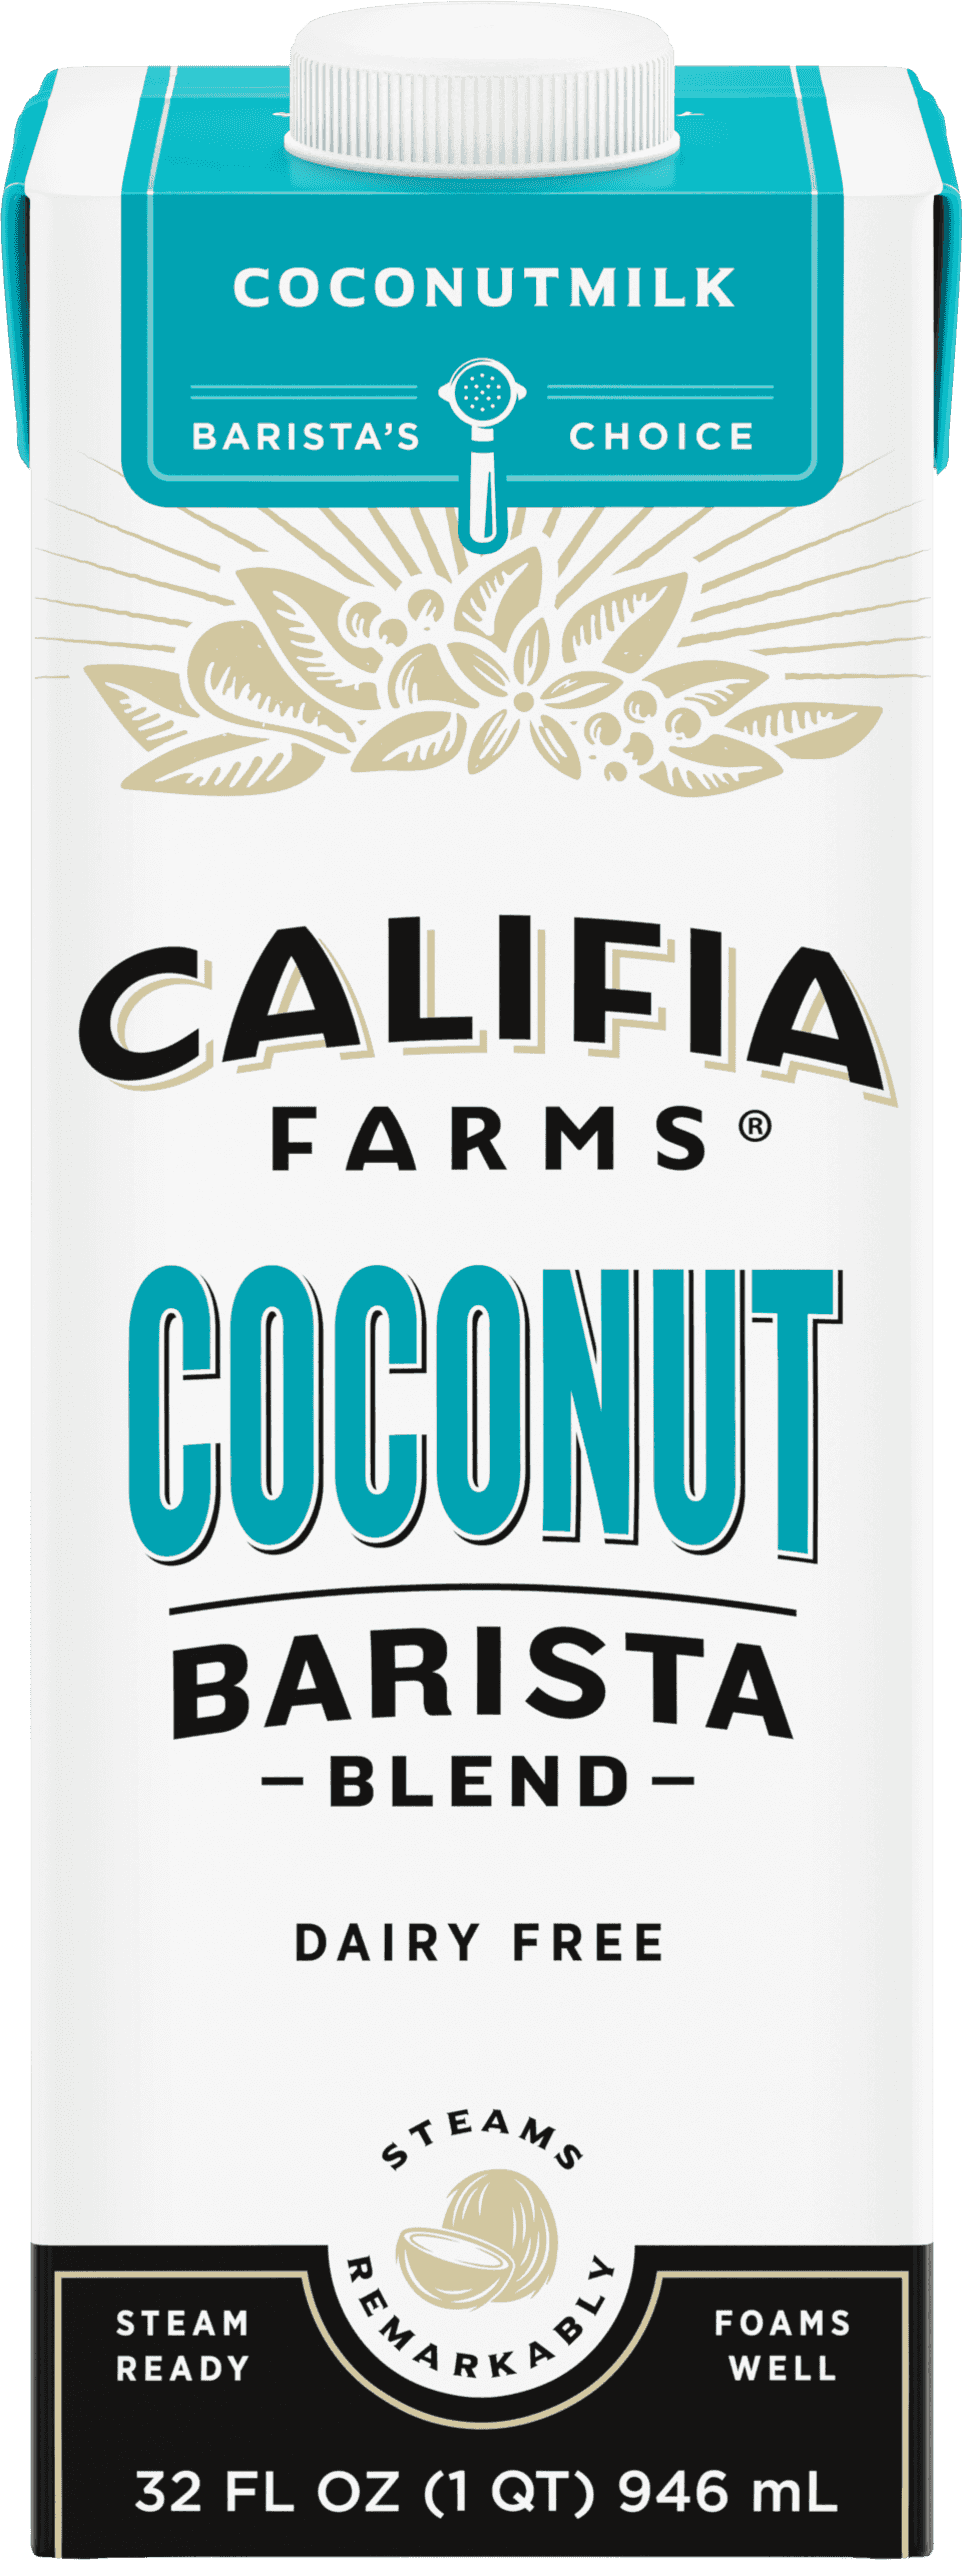 Califia Farms Oat Barista Blend in Canada